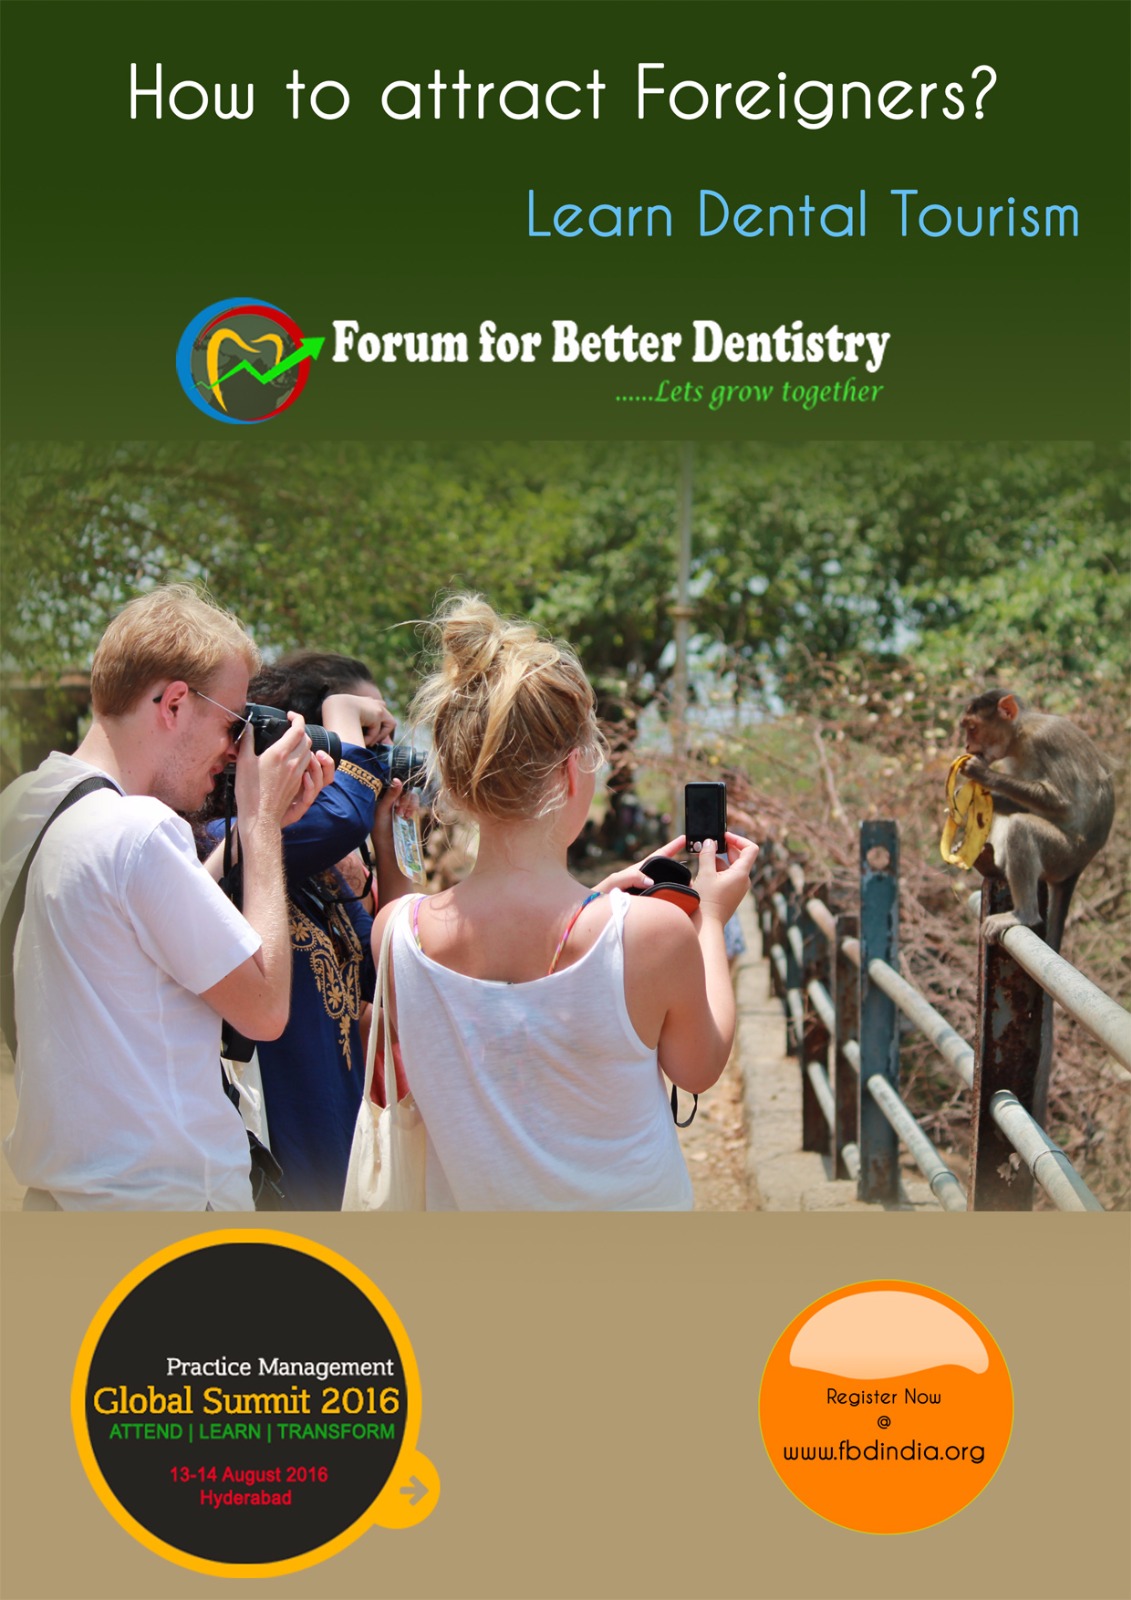 Forum for better dentistry